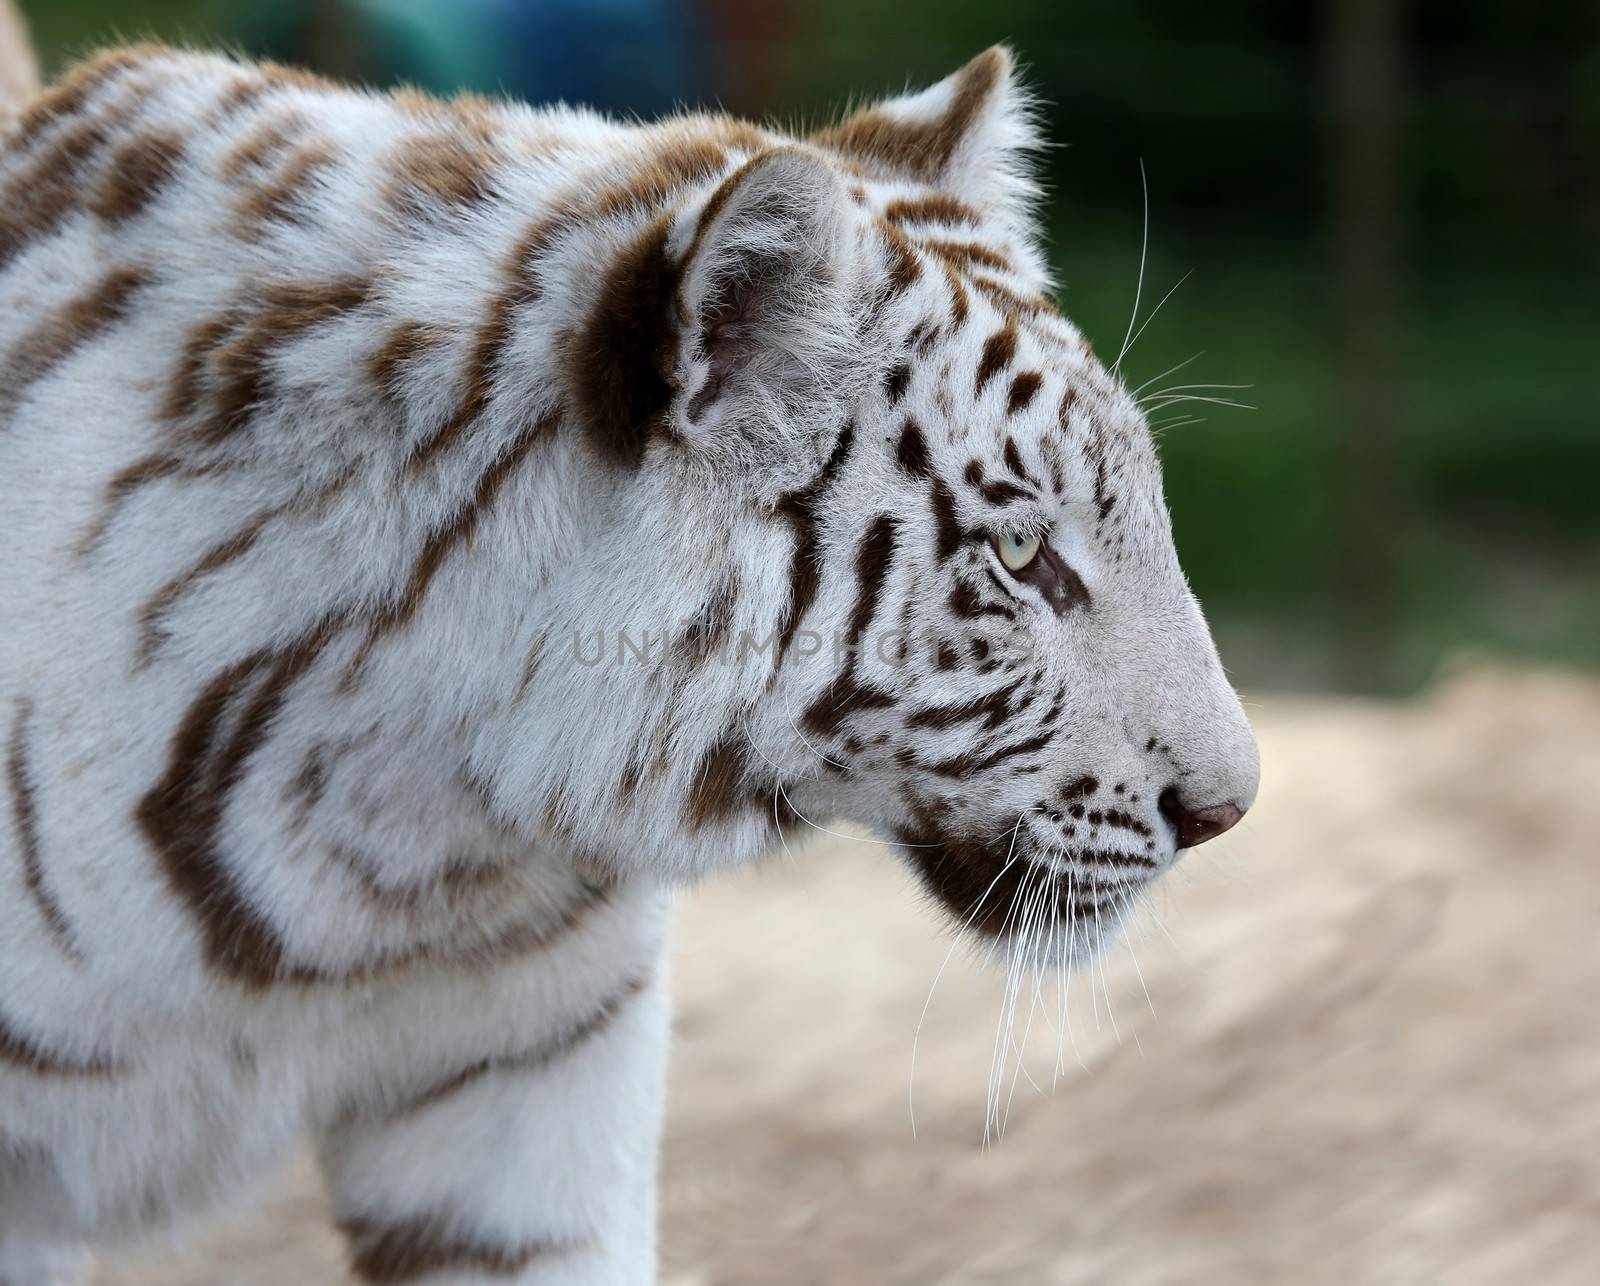 White Tiger Profile by fouroaks